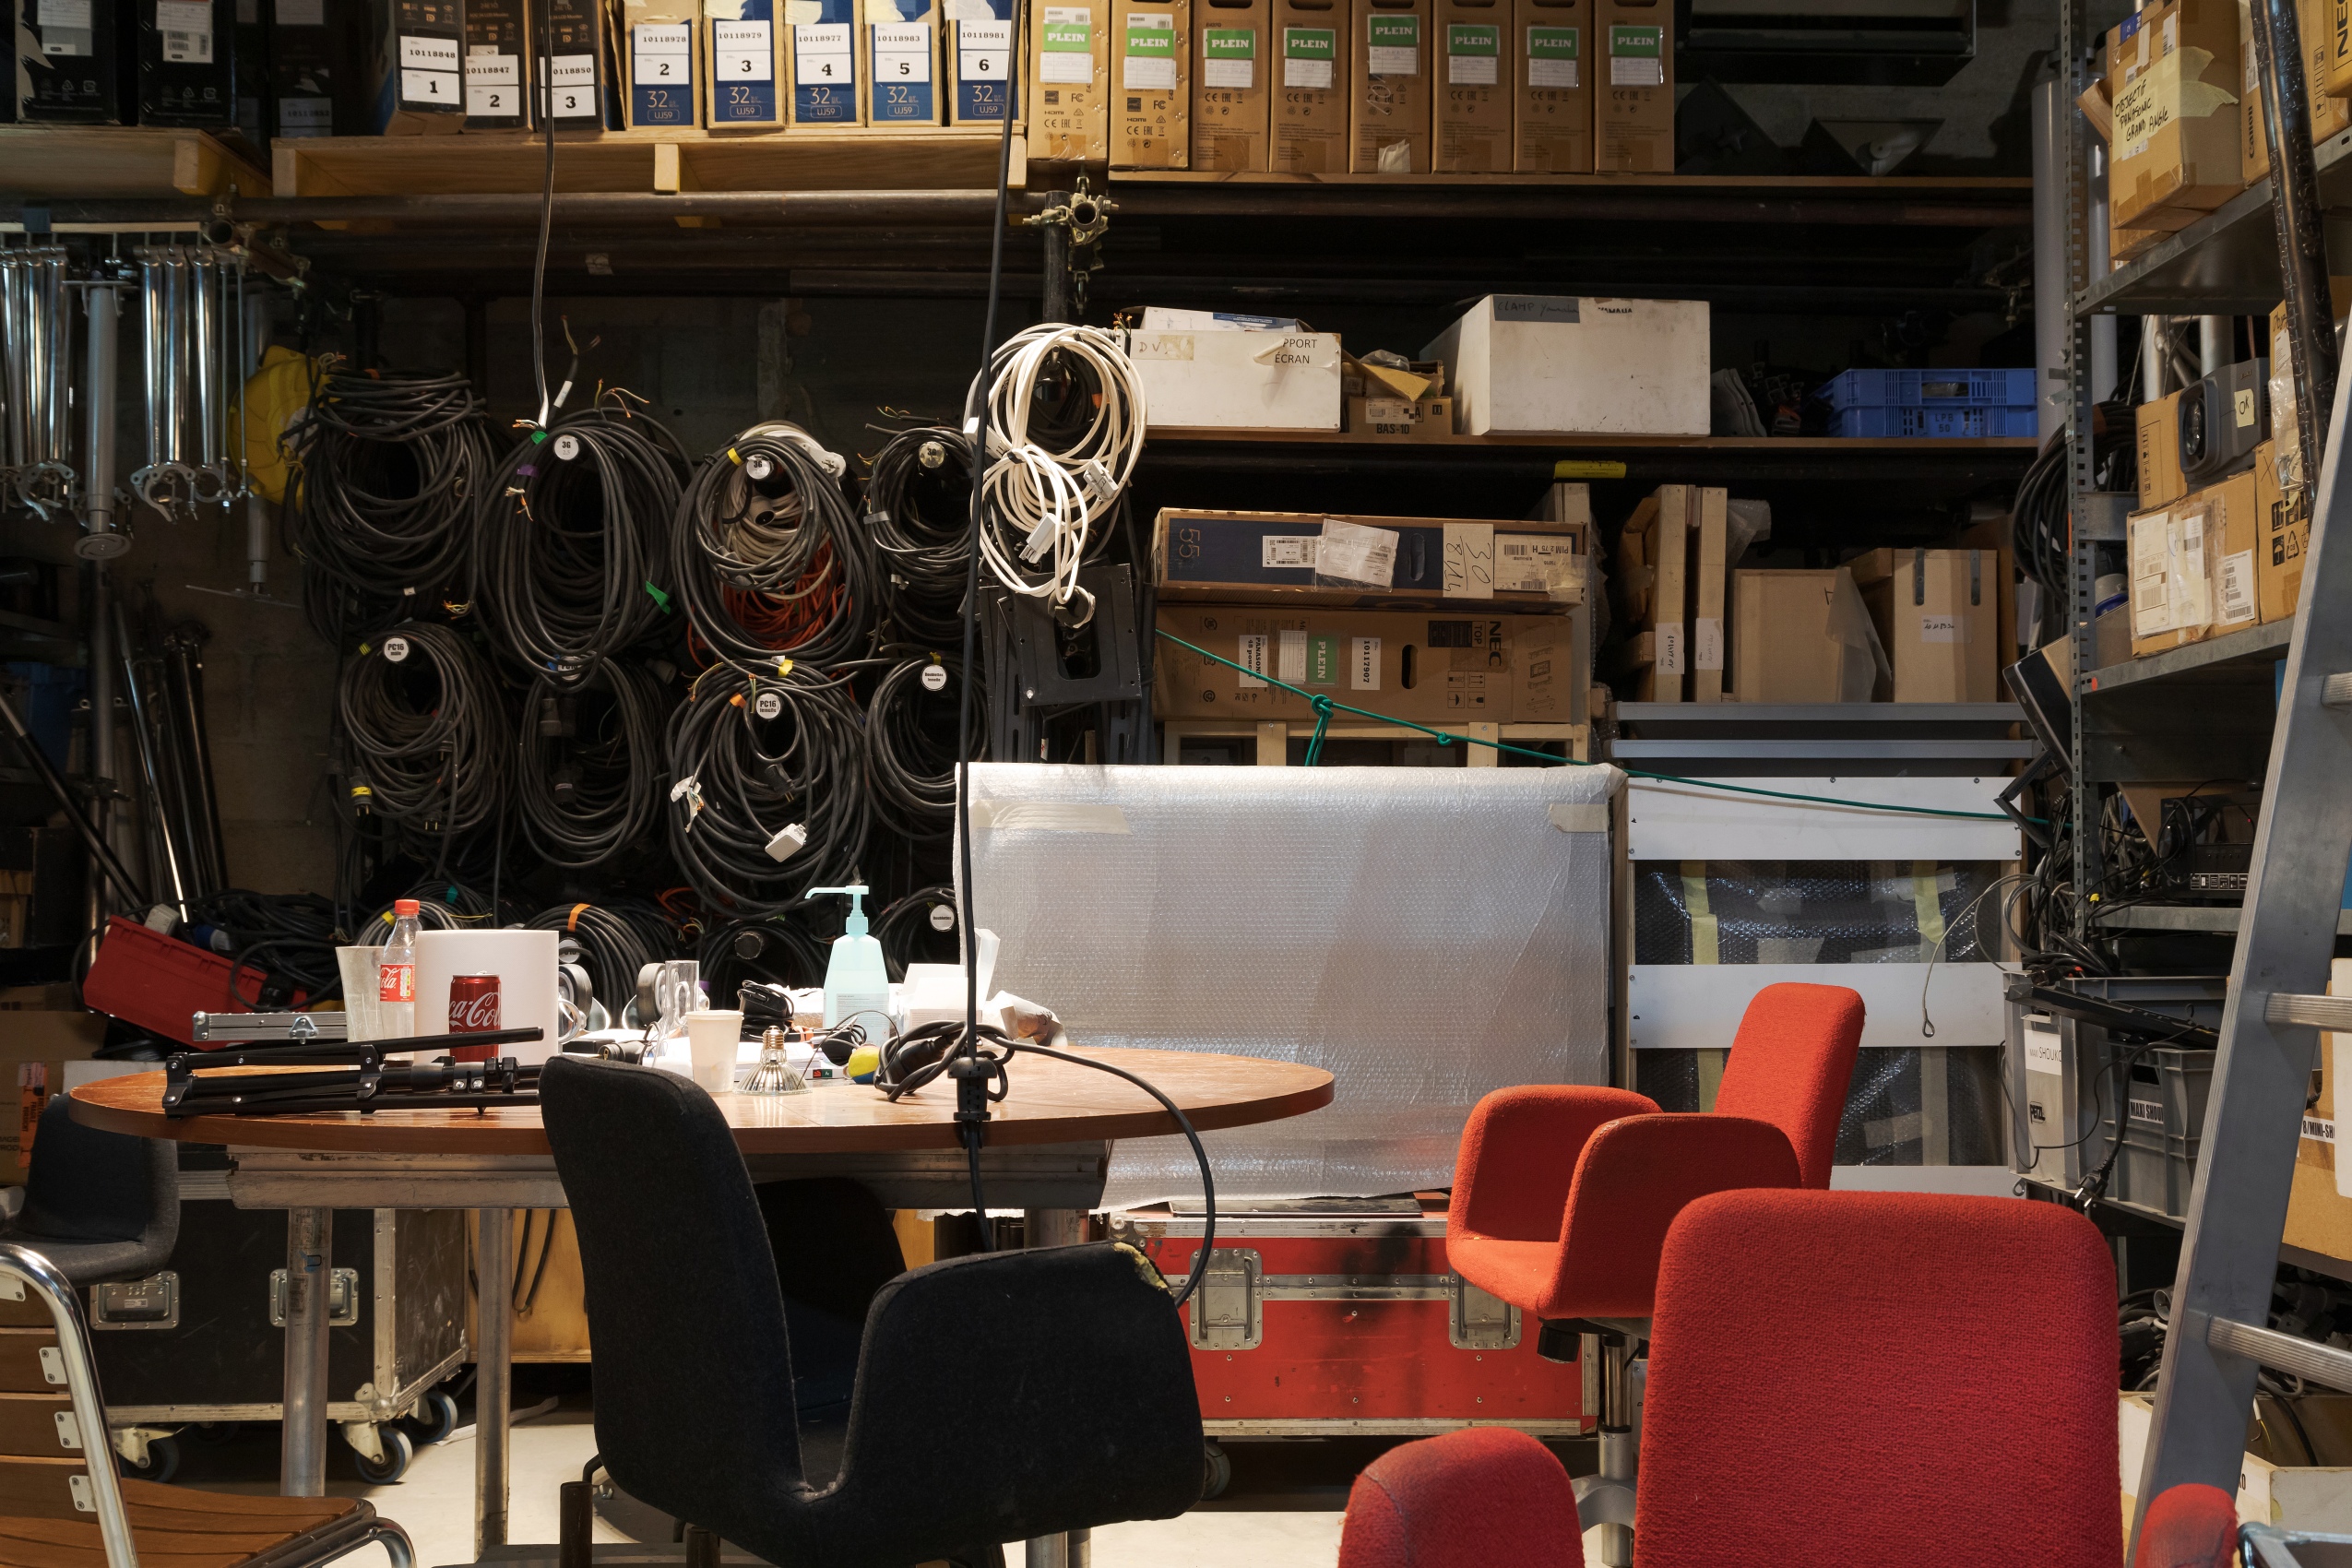 L’atelier de la régie audiovisuelle est organisé autour d’une table centrale, entouré de fauteuils rouges et noirs. Les murs sont couverts de câbles, de projecteurs, de rouleaux de plastique coloré, d’échelles ou de cartons.  